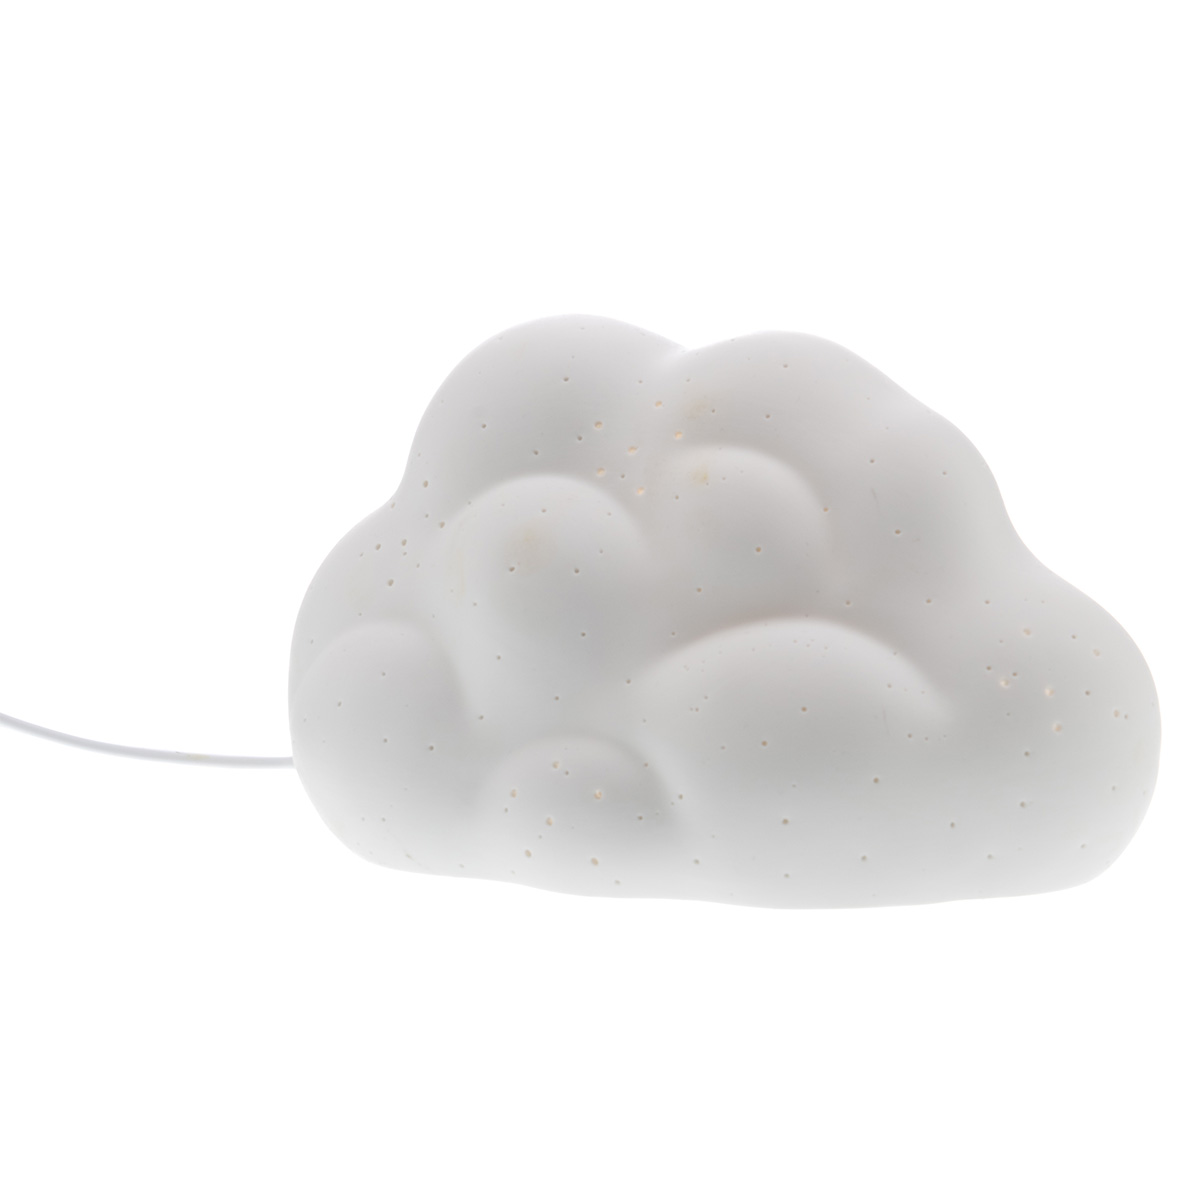 Lamps & Company lampe de chevet enfant grise motif nuages